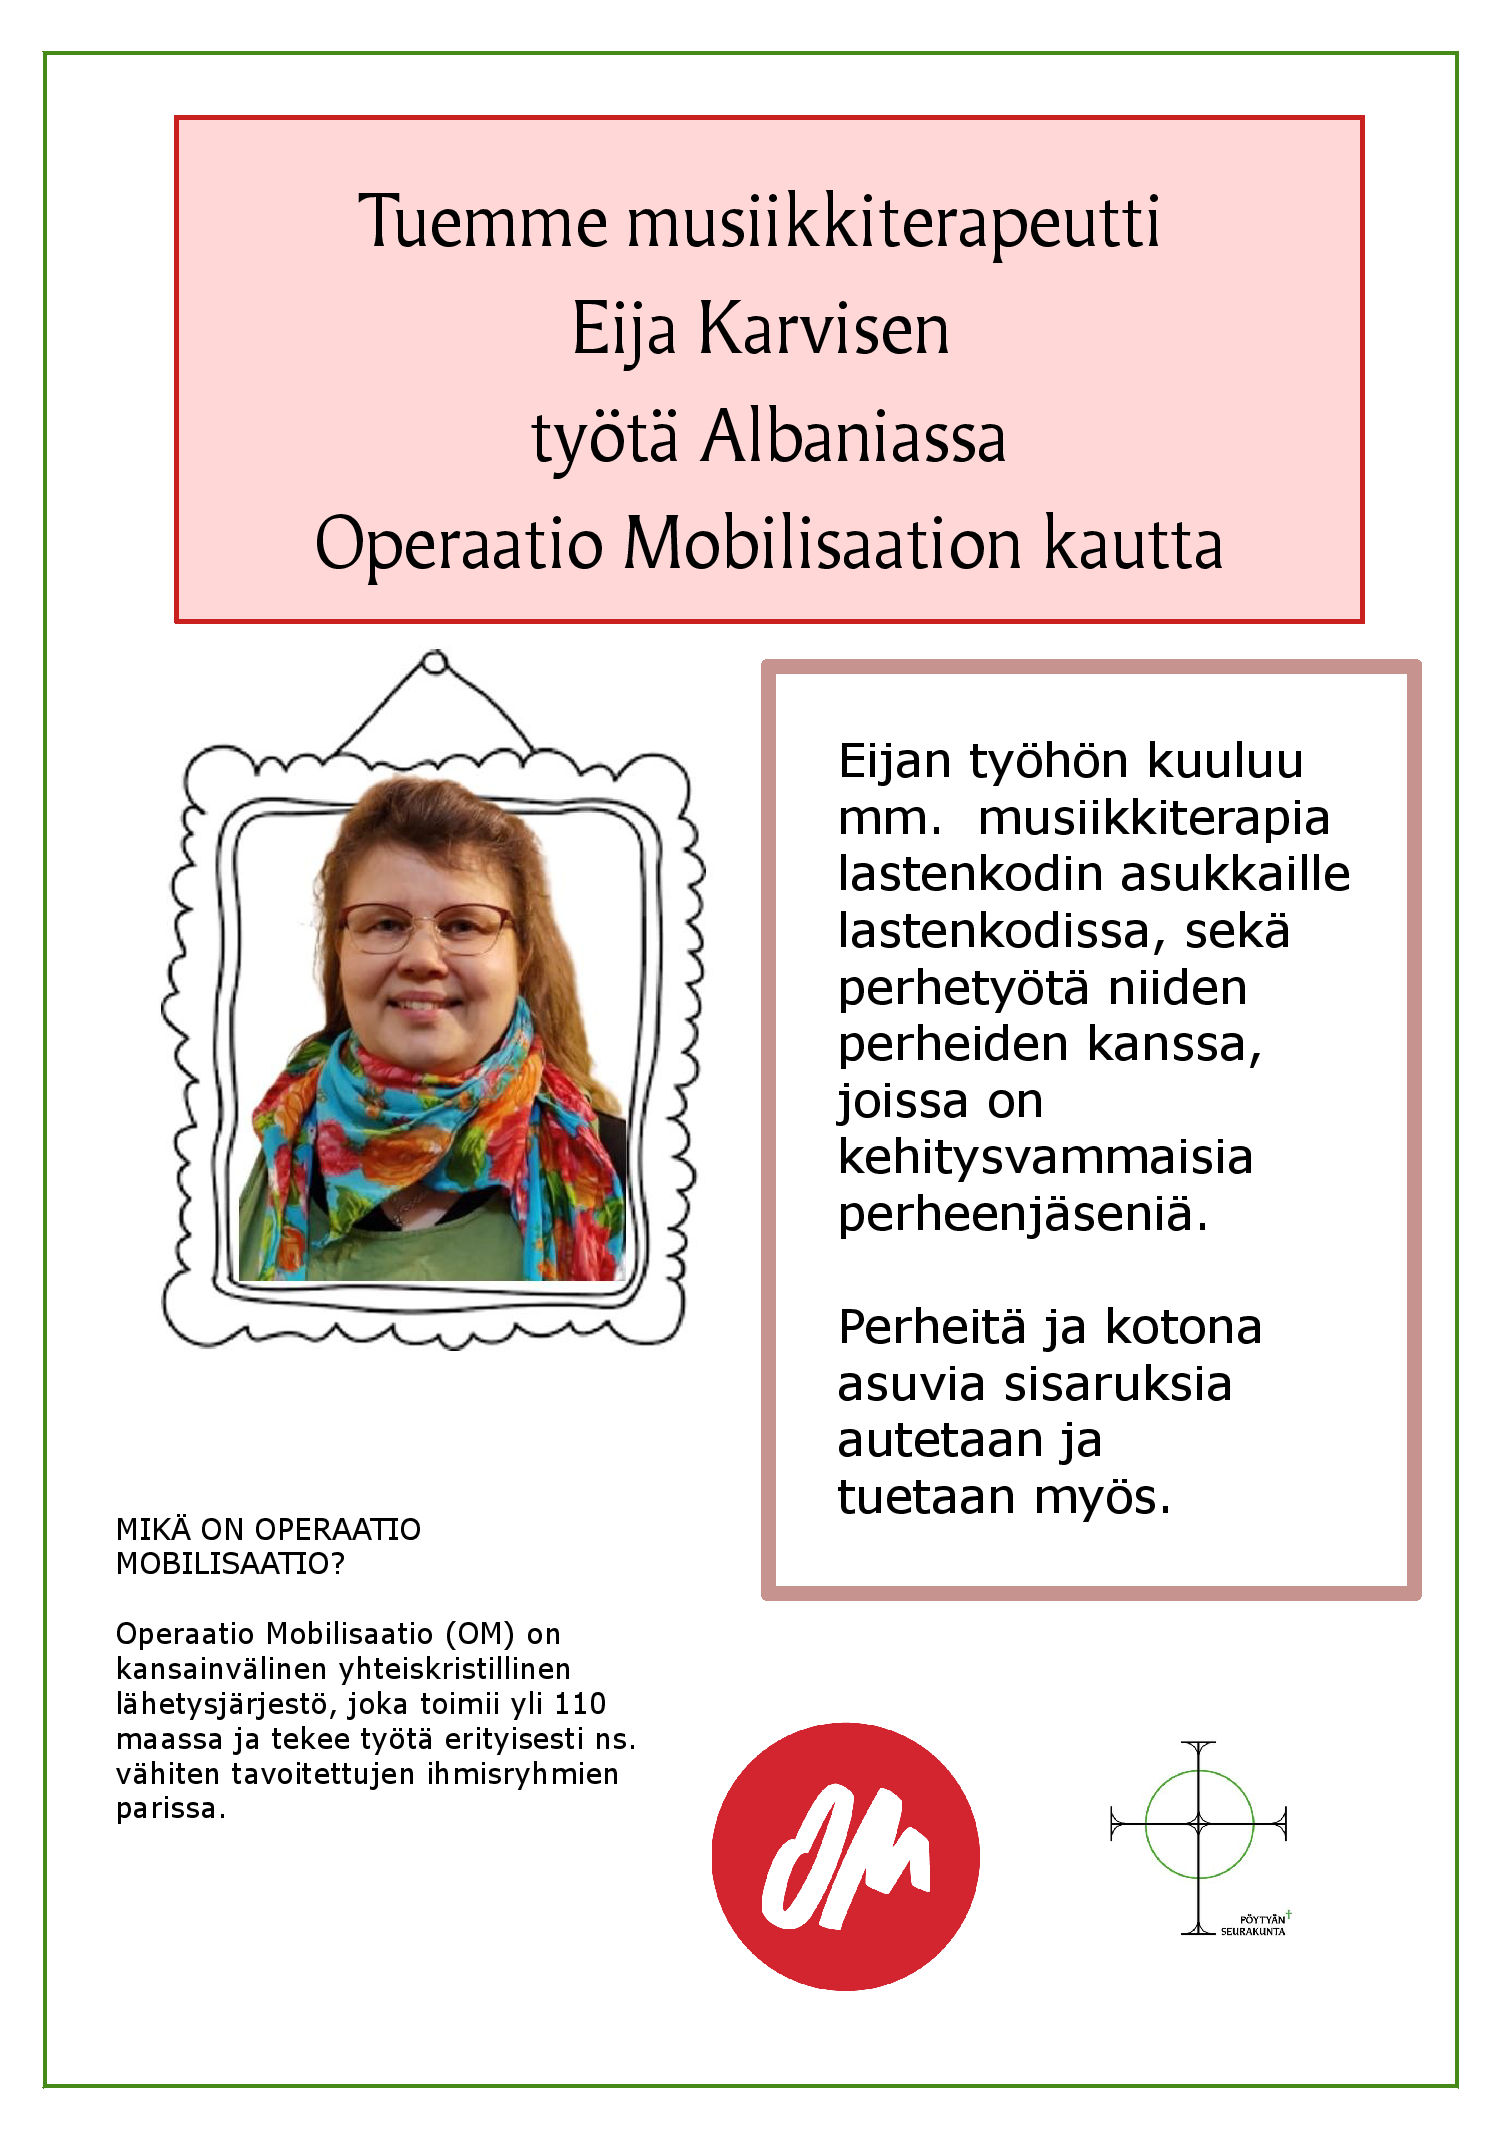 Tuemme musiikkiterapeutti Eija Karvisen työtä Albaniassa.